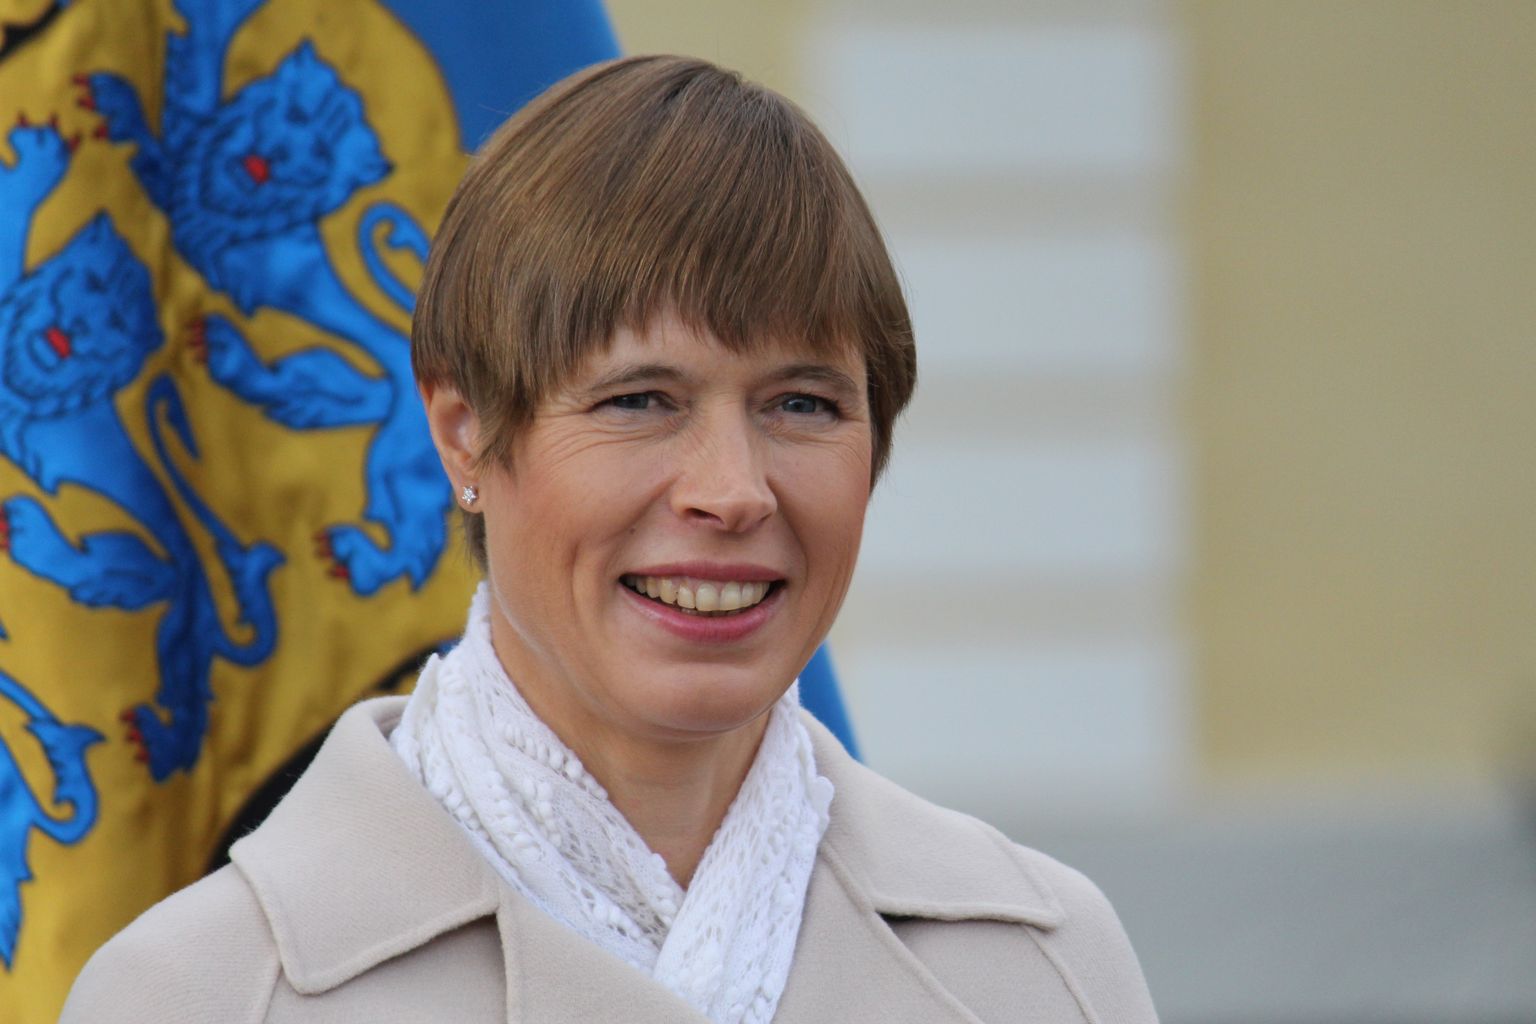 президент эстонии и ее сын